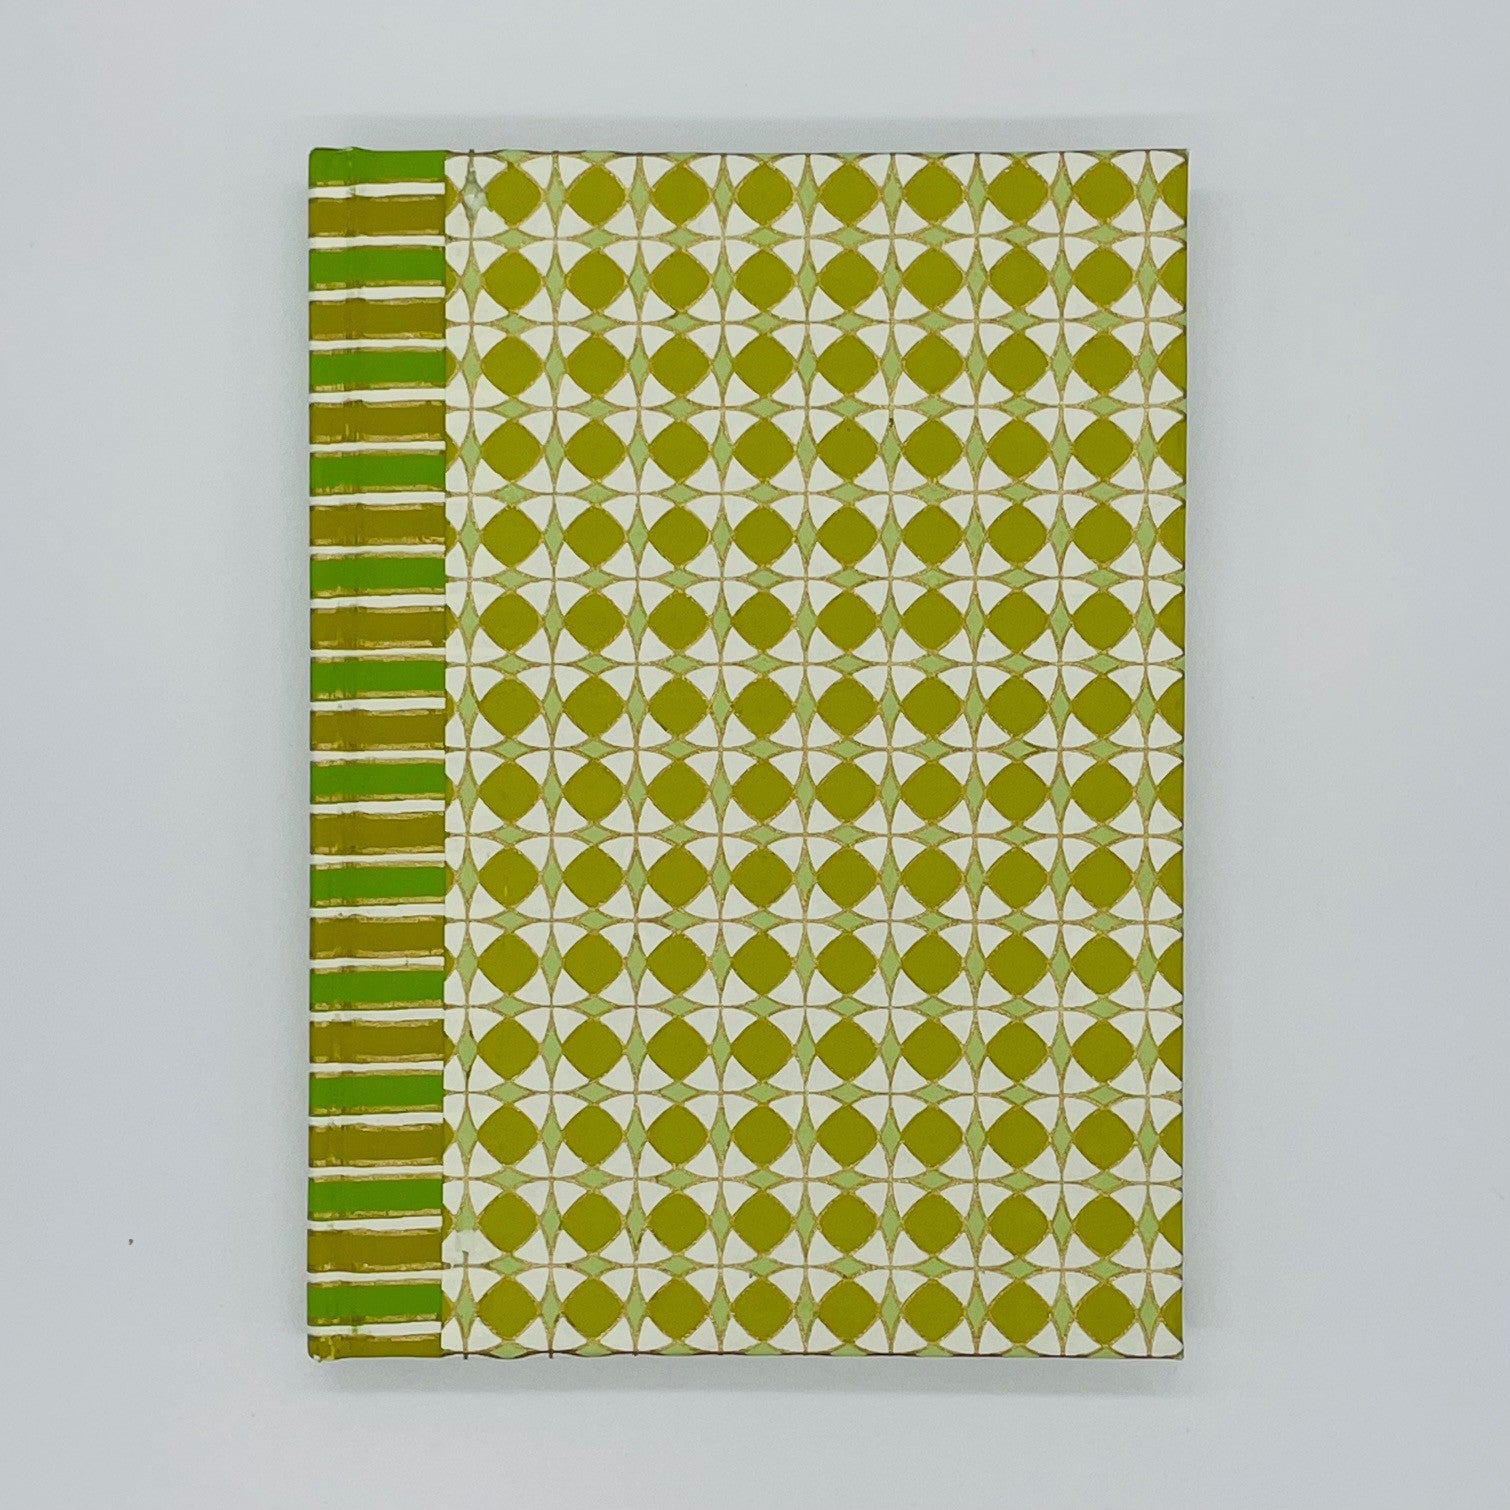 Handmade Green Notebook